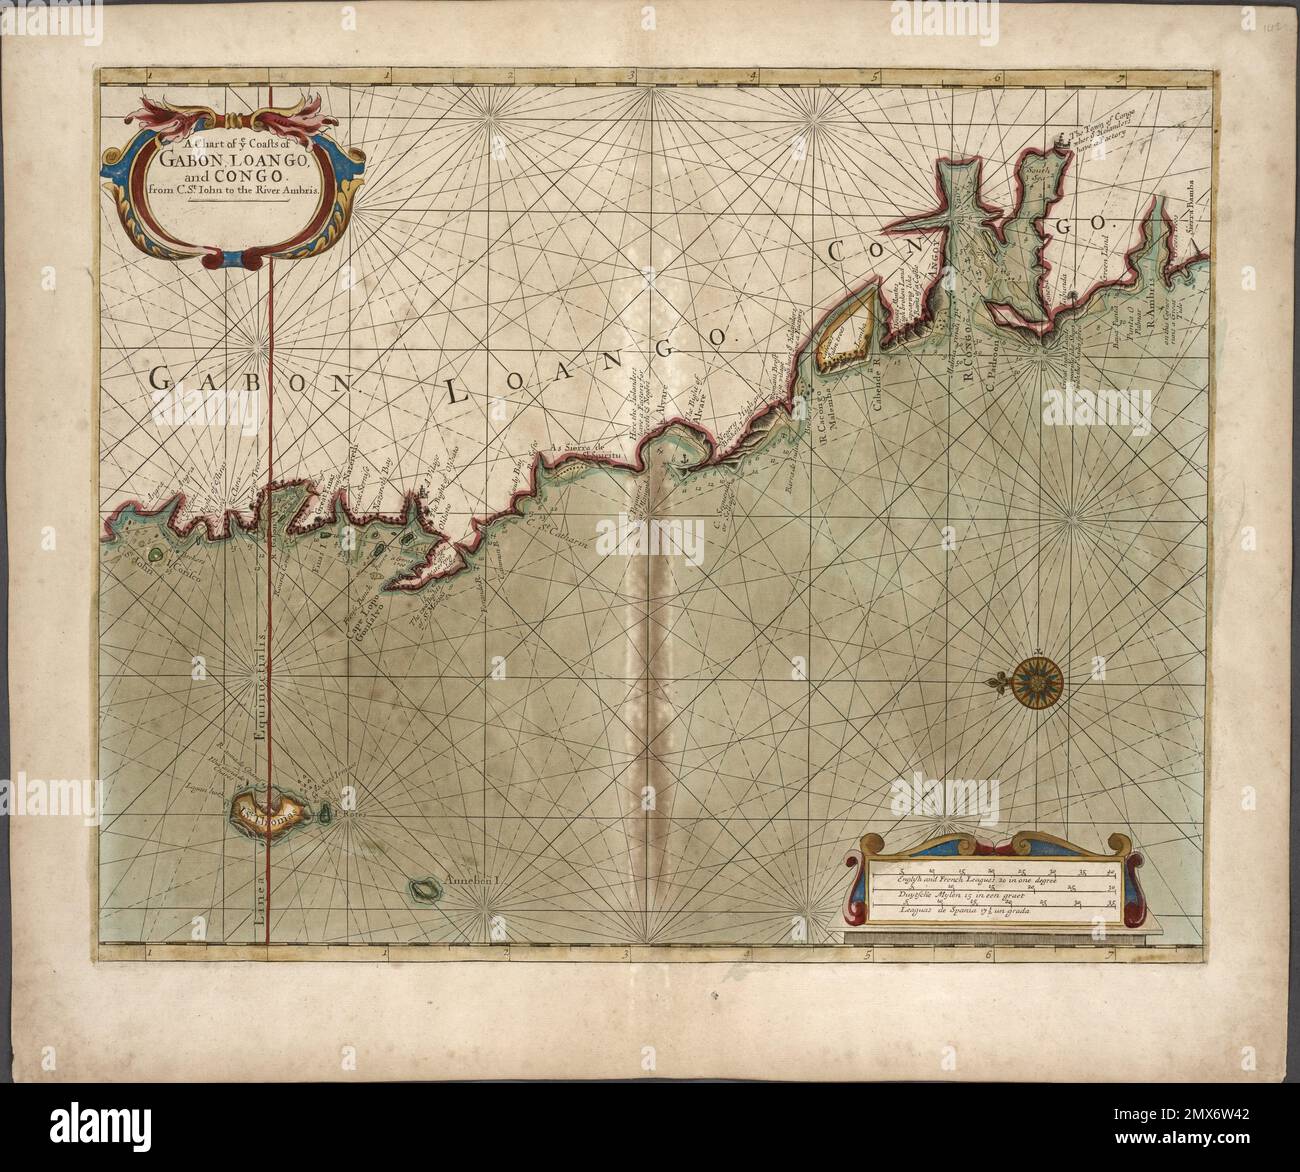 Eine Karte der Küsten GABUNS, LOANGO und KONGOS von C. St. Iohn an den Fluss Ambris. Thornton, Samuel (Kartograf). Atlanten, Gazetteers, Reiseführer Stockfoto